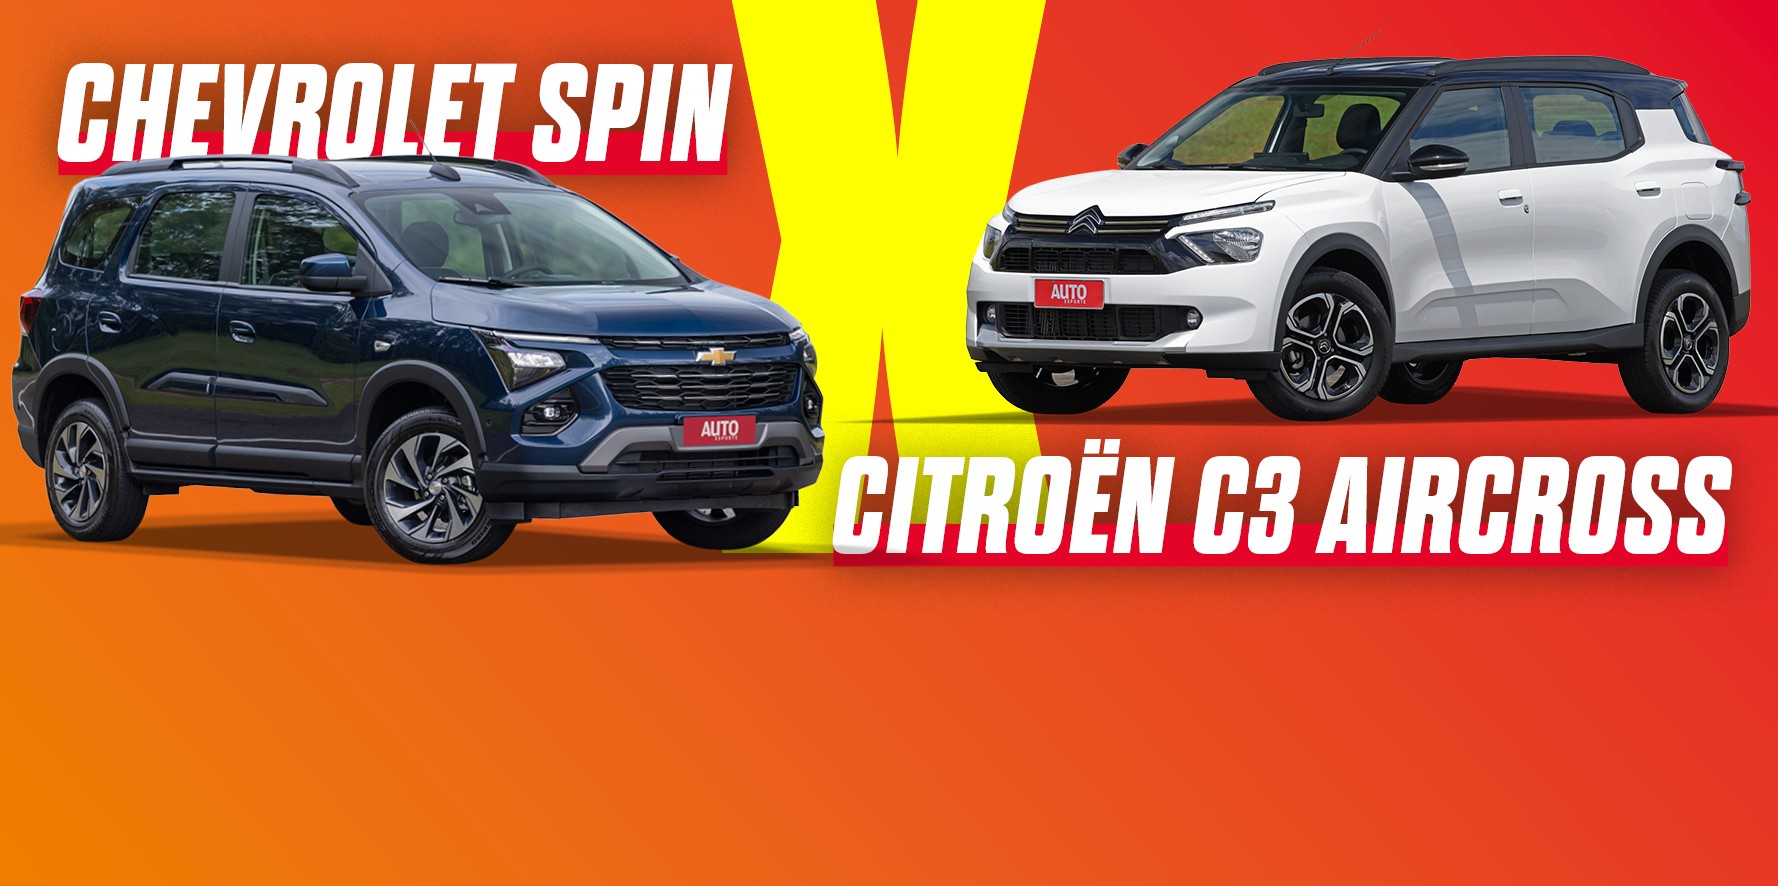 Chevrolet Spin x Citroën Aircross: compare preços, versões e equipamentos